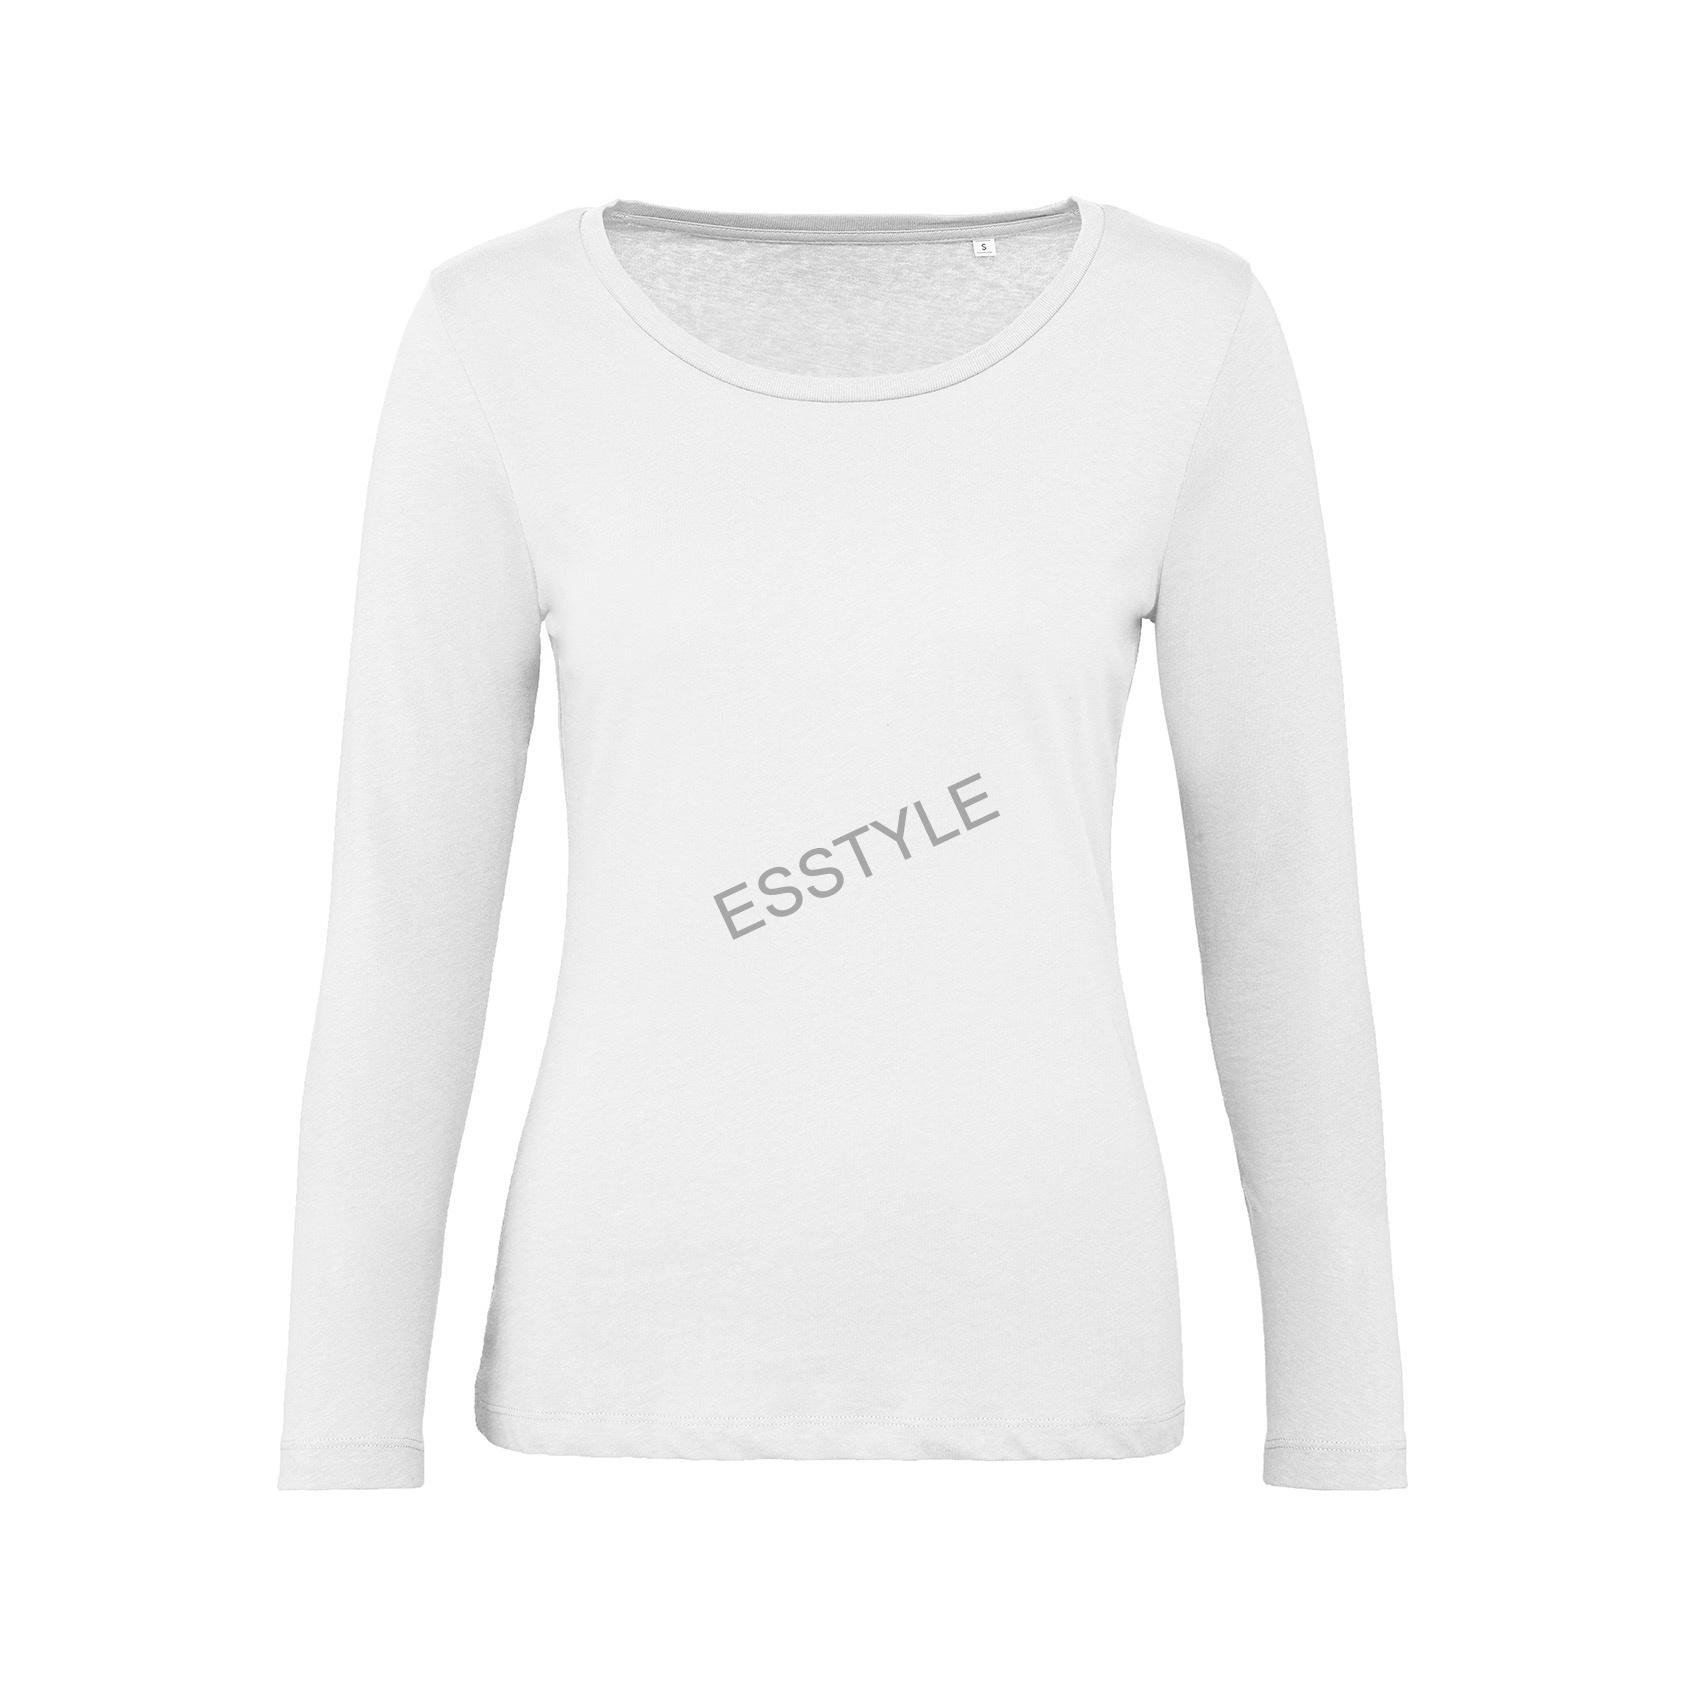 Dámske tričko s dlhými rukávmi Inspire - biele - veľkosť XL